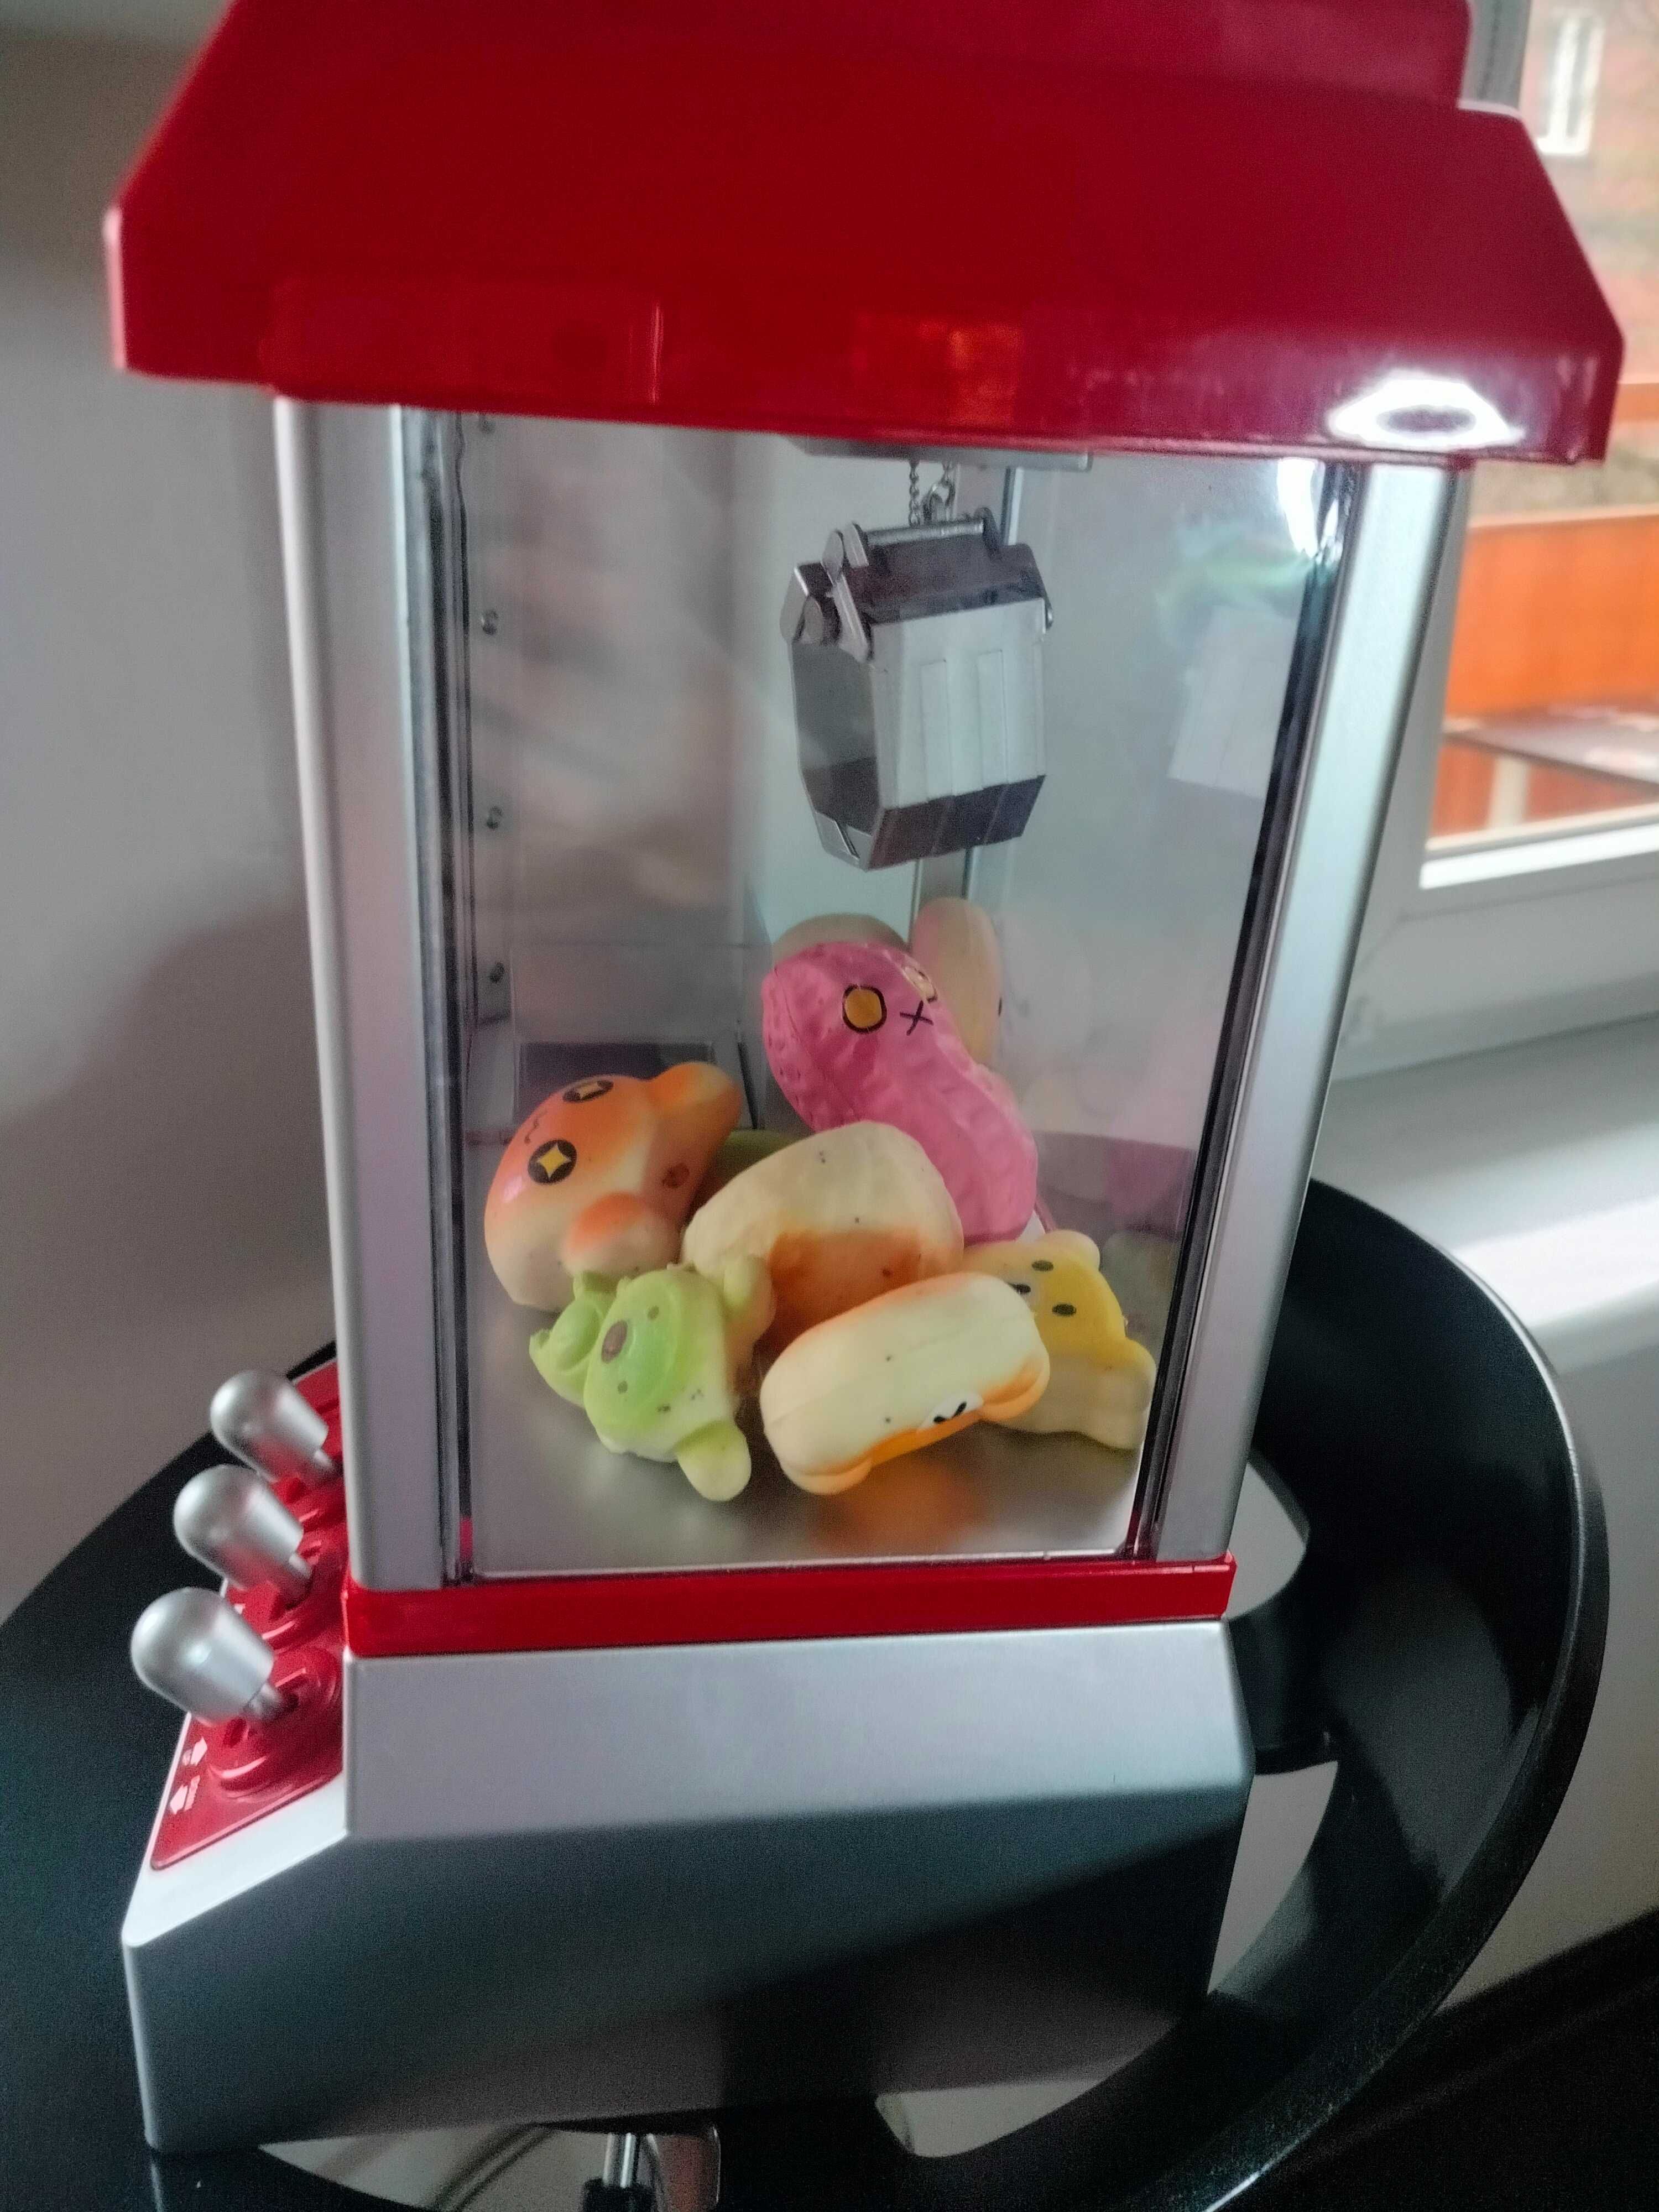 Automat do gier łapa do wyciągania zabawek maskotki cukierków kulek